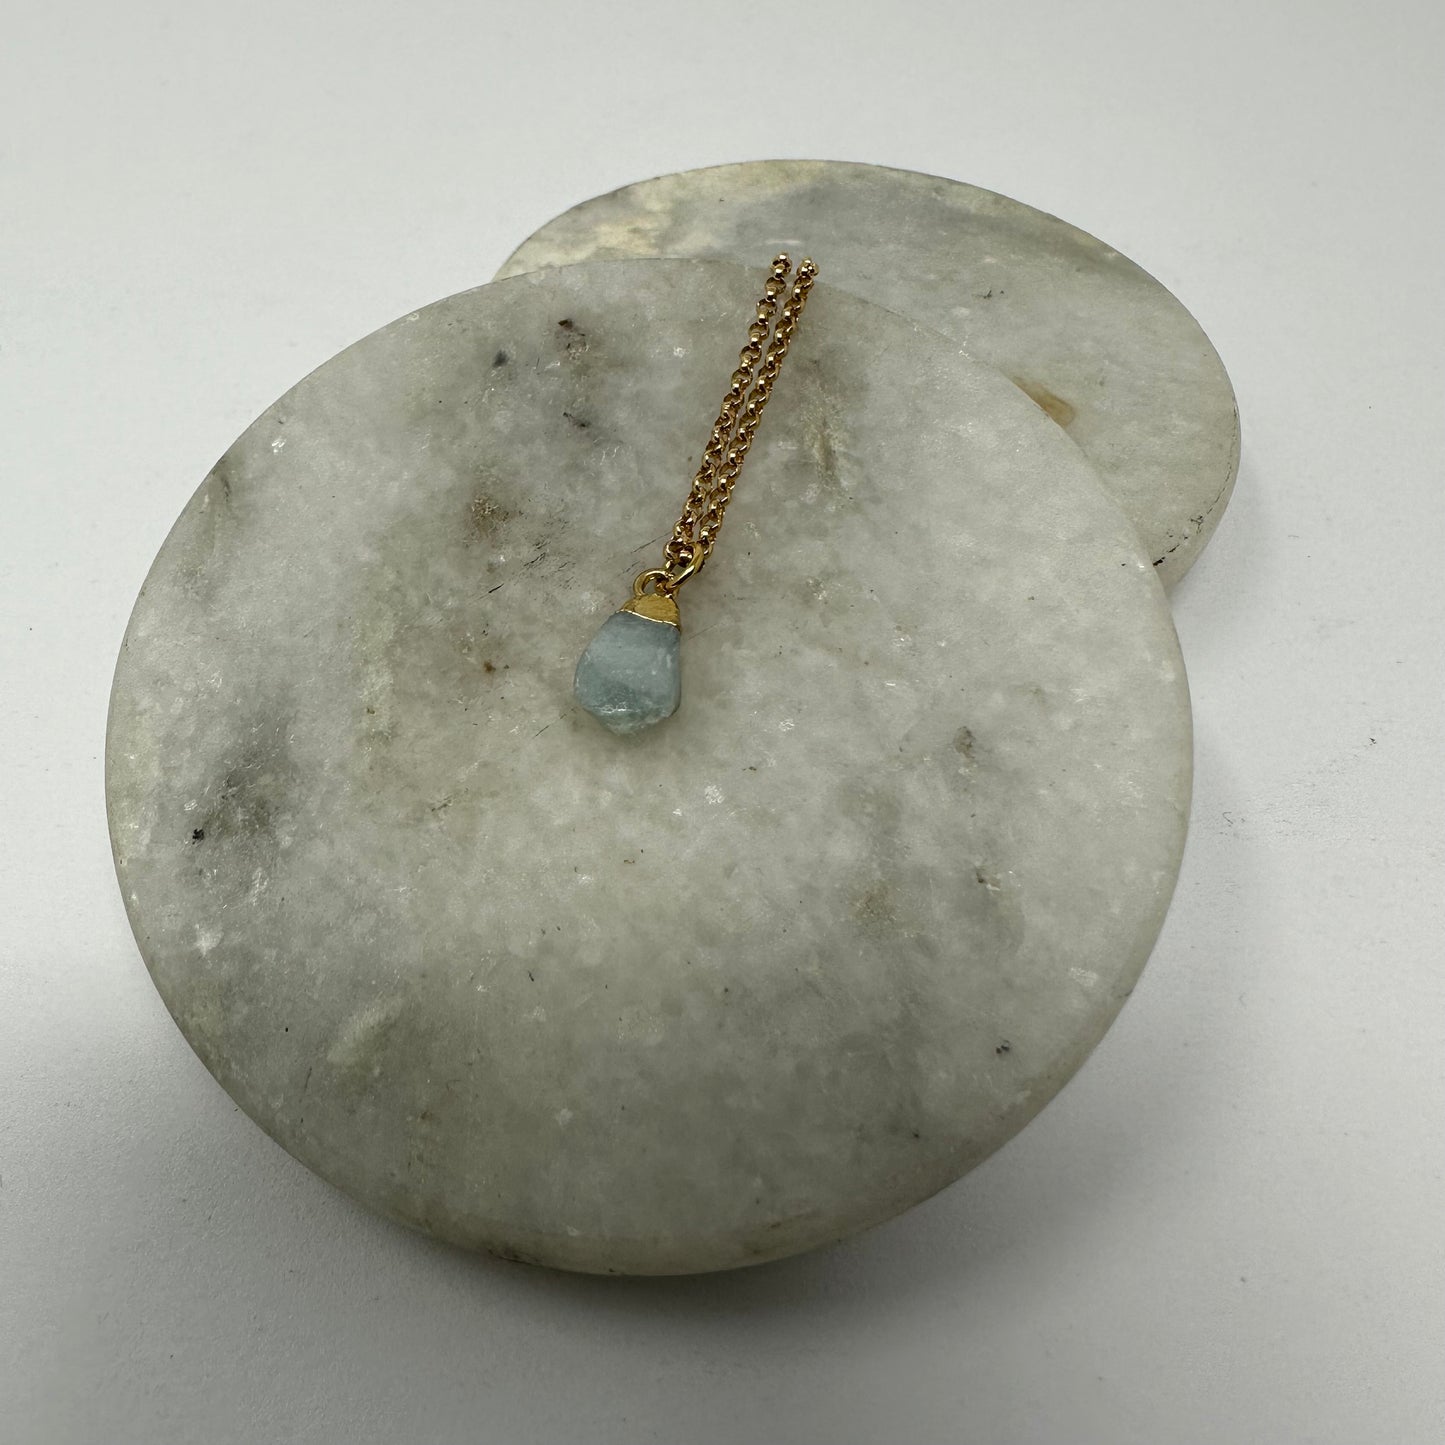 Small aquamarine pendant